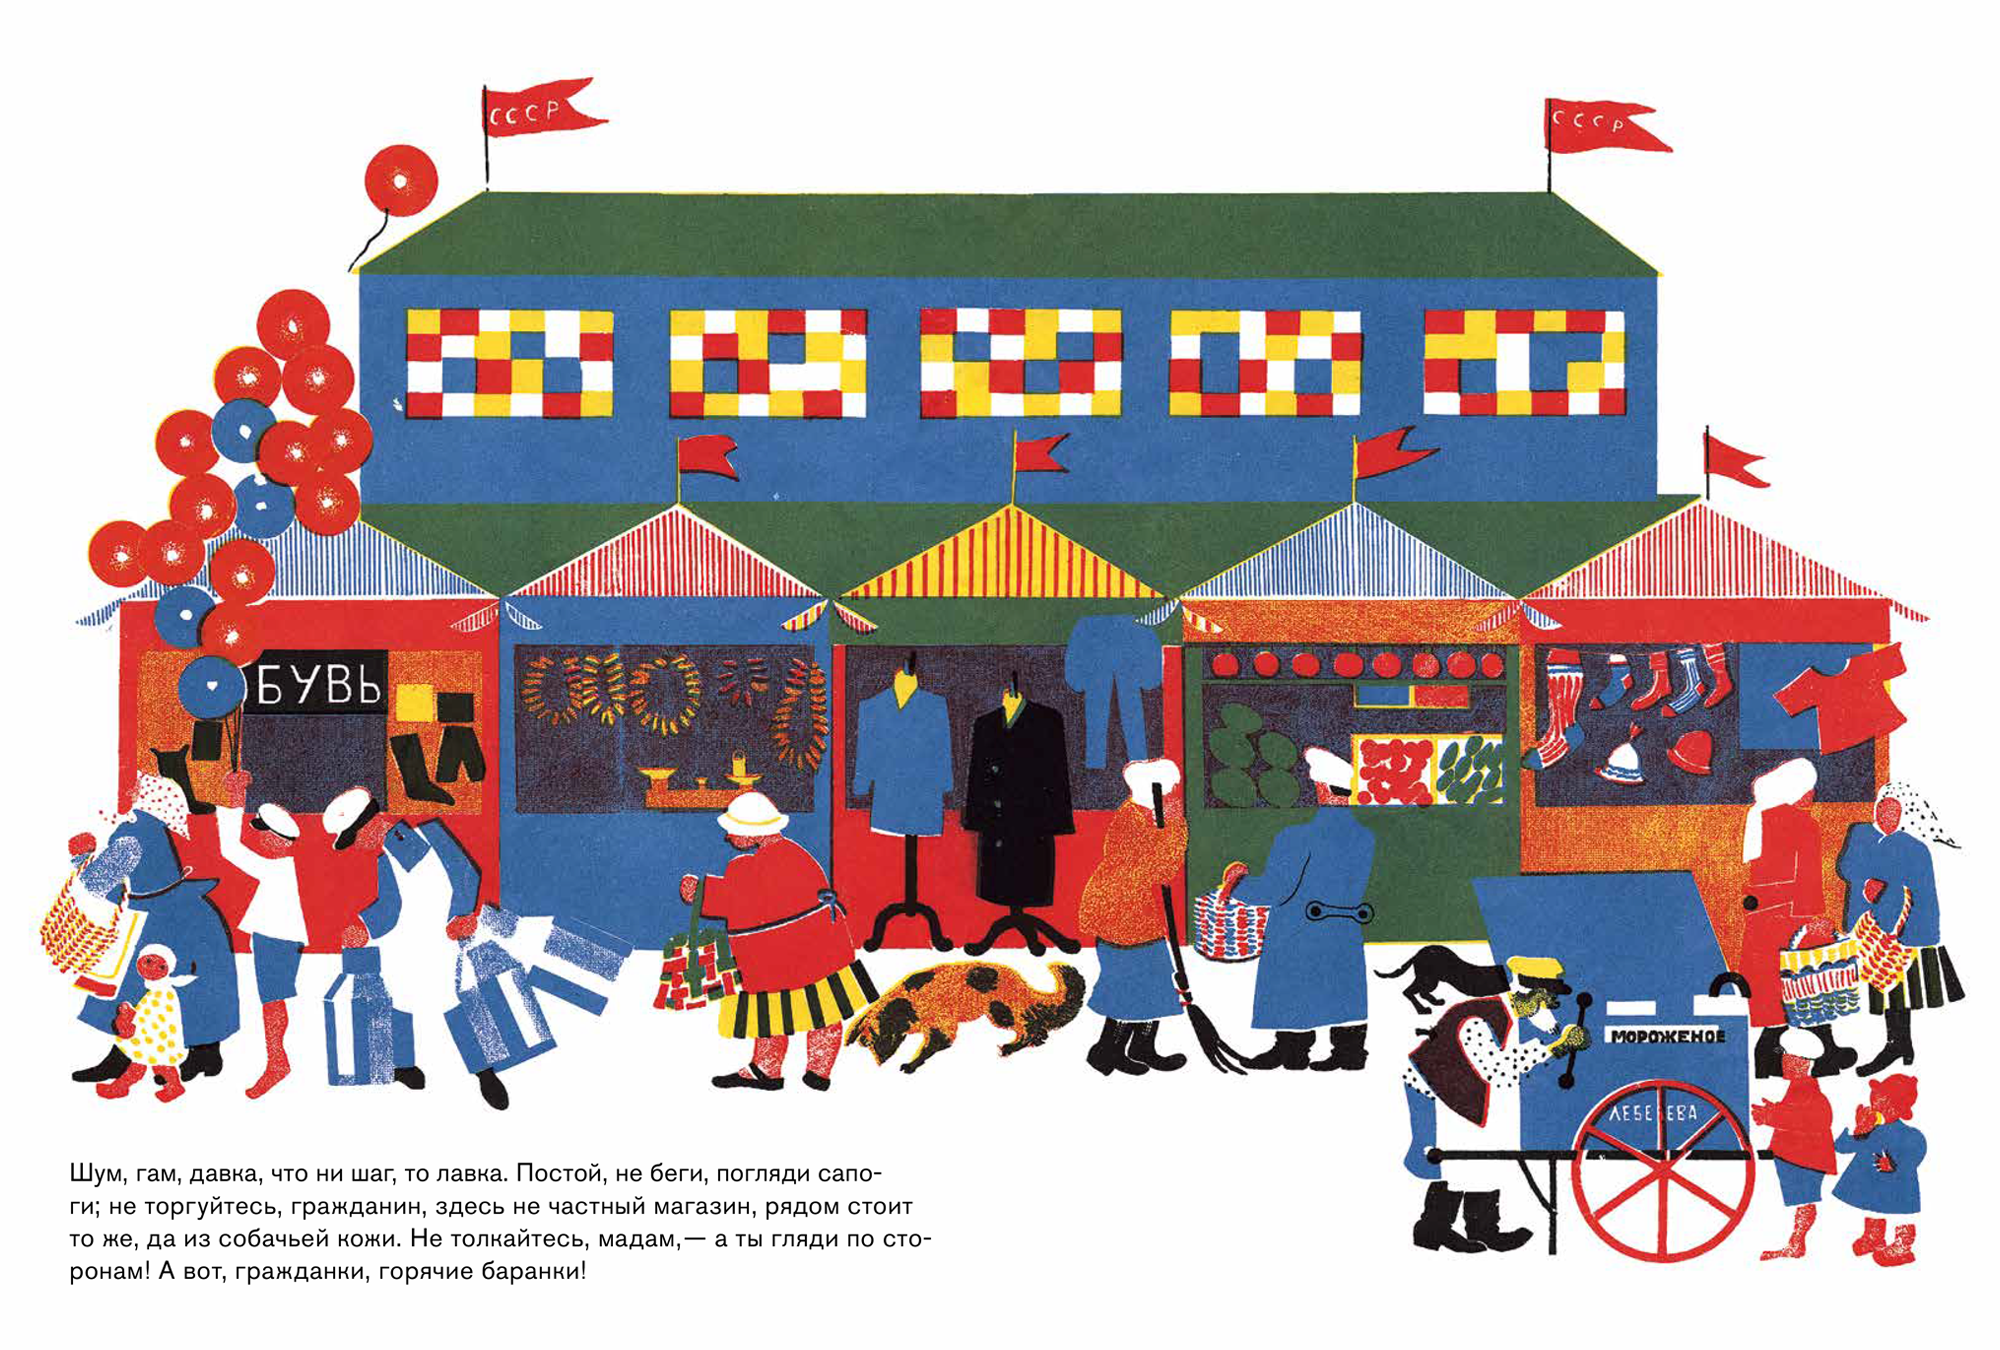 Книга «Рынок» с текстом Евгения Шварца и иллюстрациями Евгении Эвенбах — пример работы с цветом и формой художника 1920⁠-⁠х годов